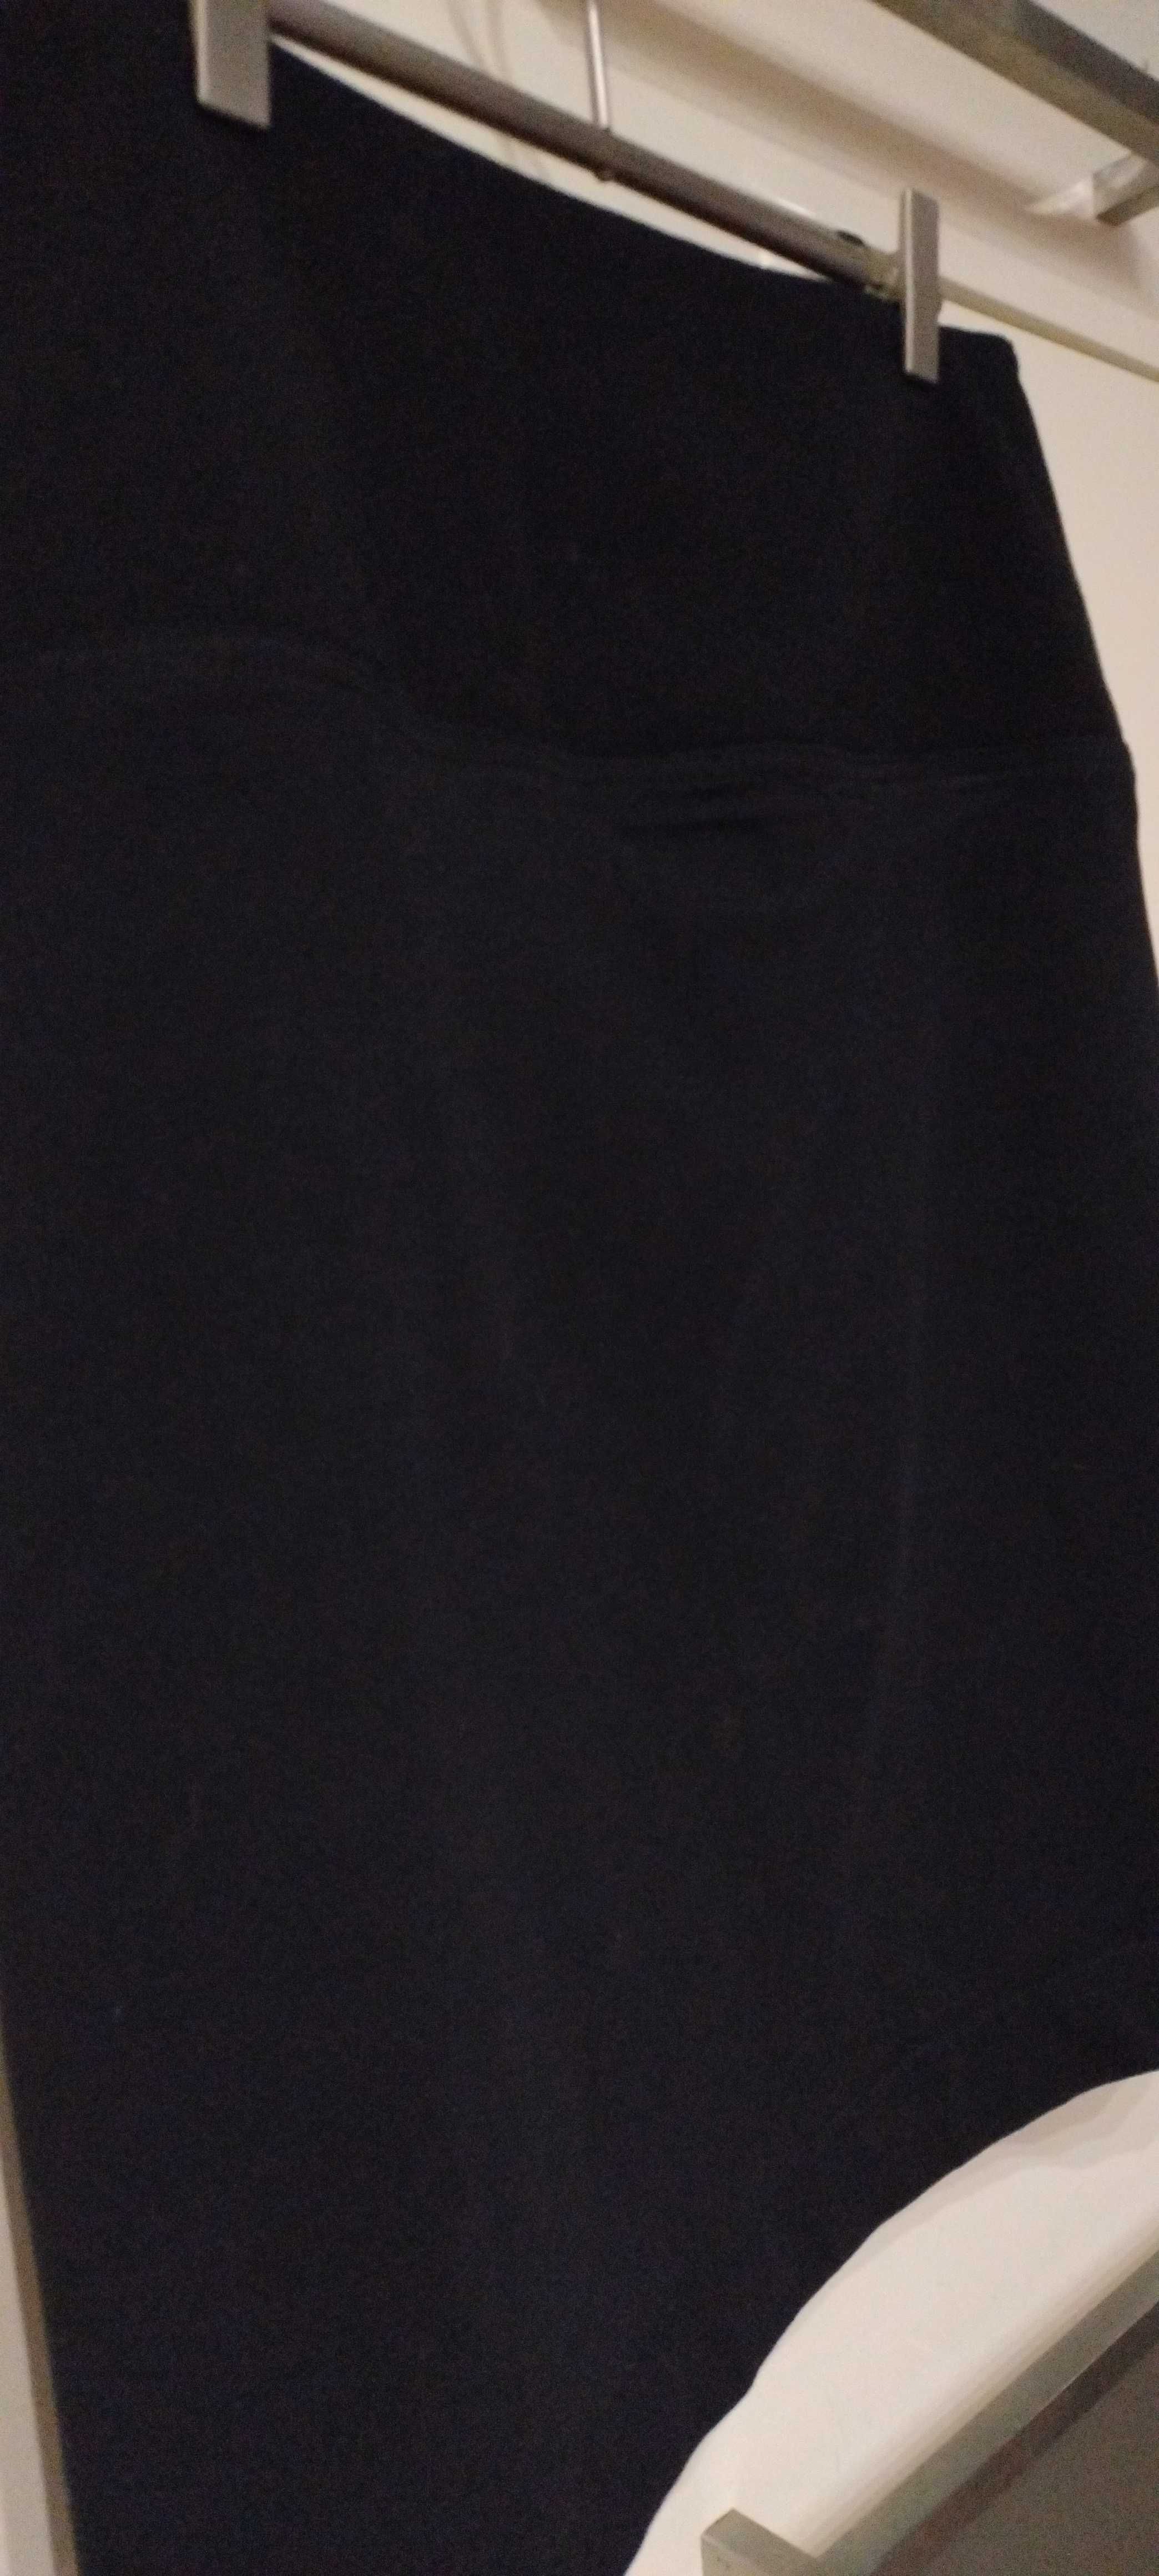 Spódnica  prosta w kolorze czarnym.